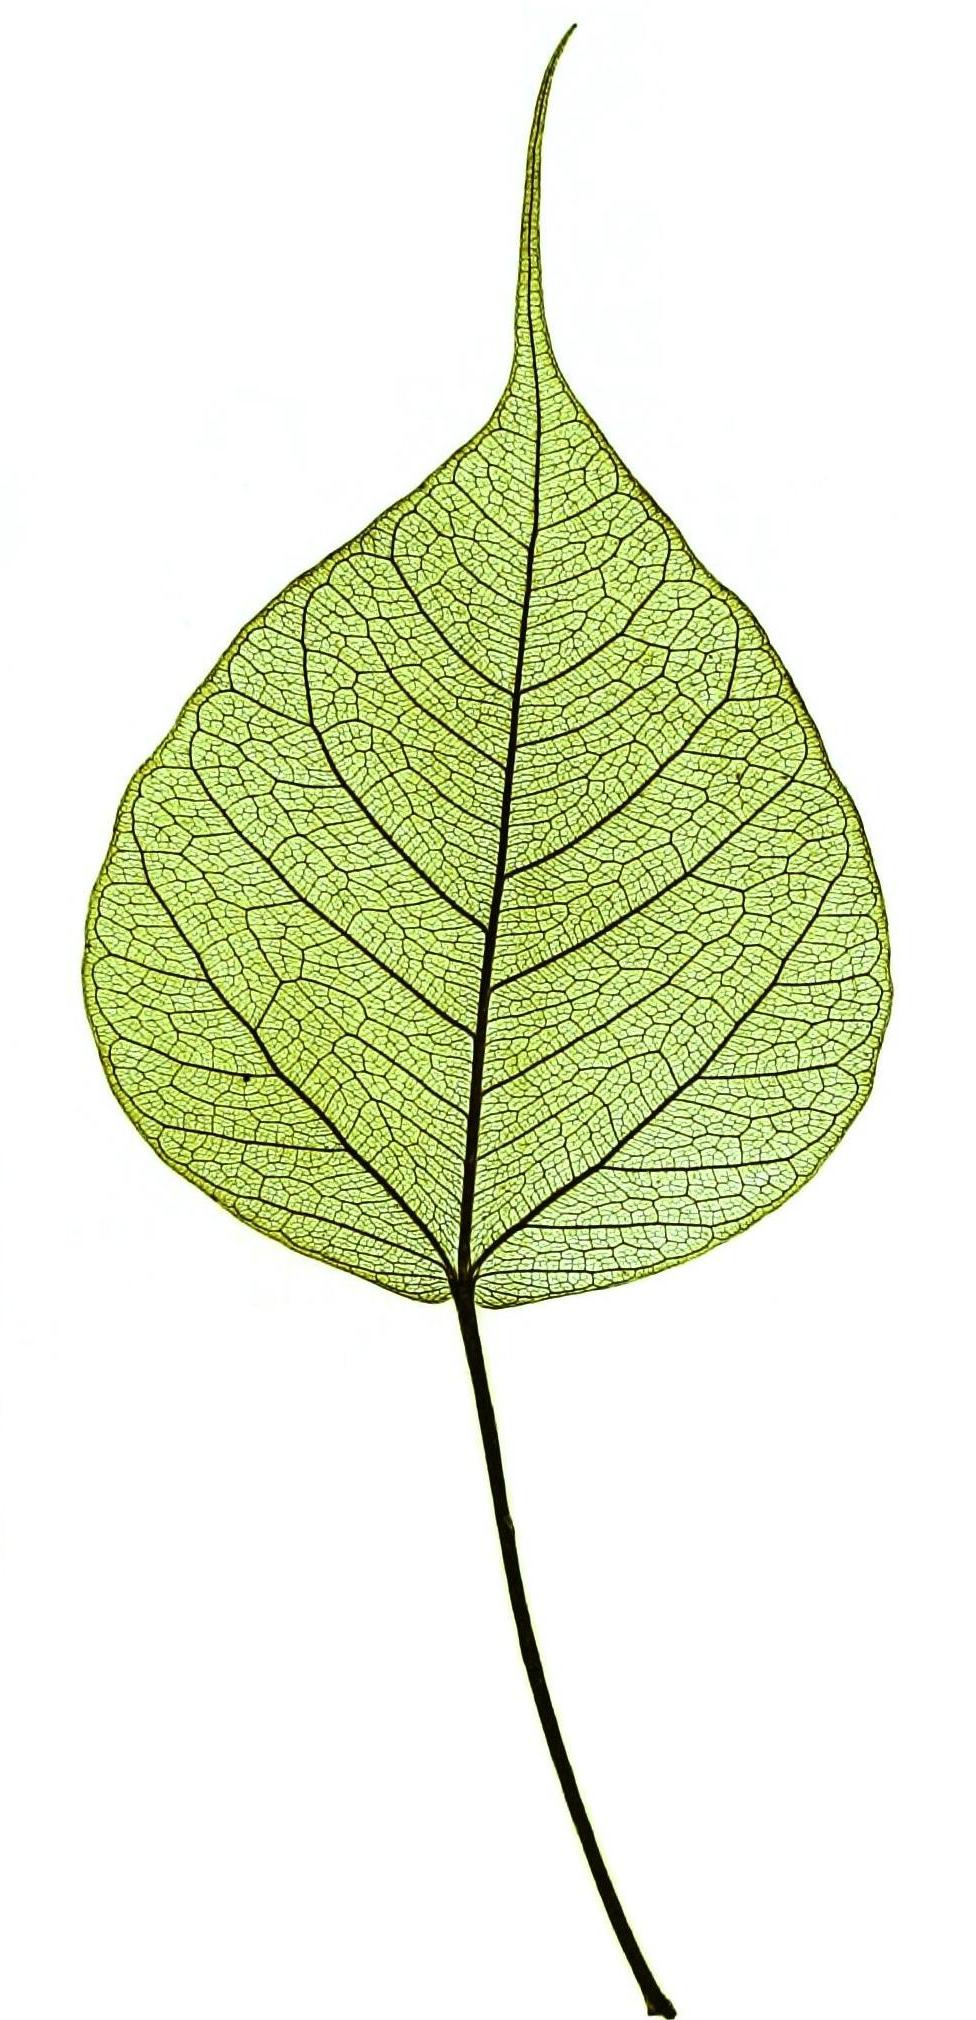 Ficus religiosa leaf